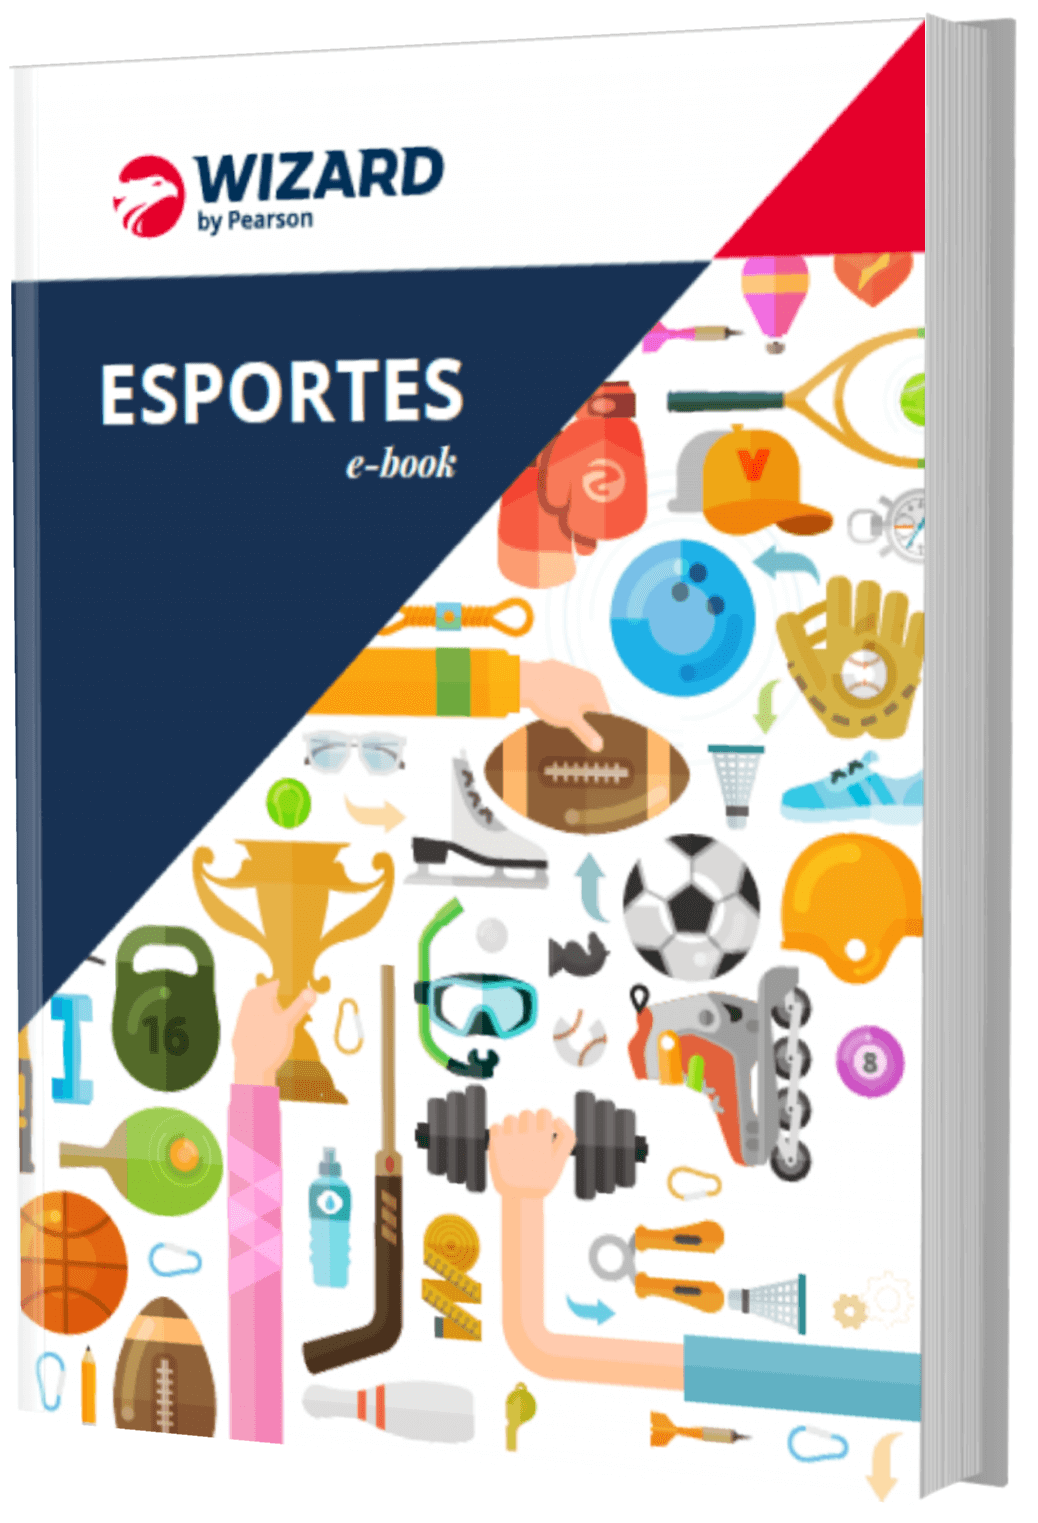 Aprenda 85 expressões do futebol em inglês